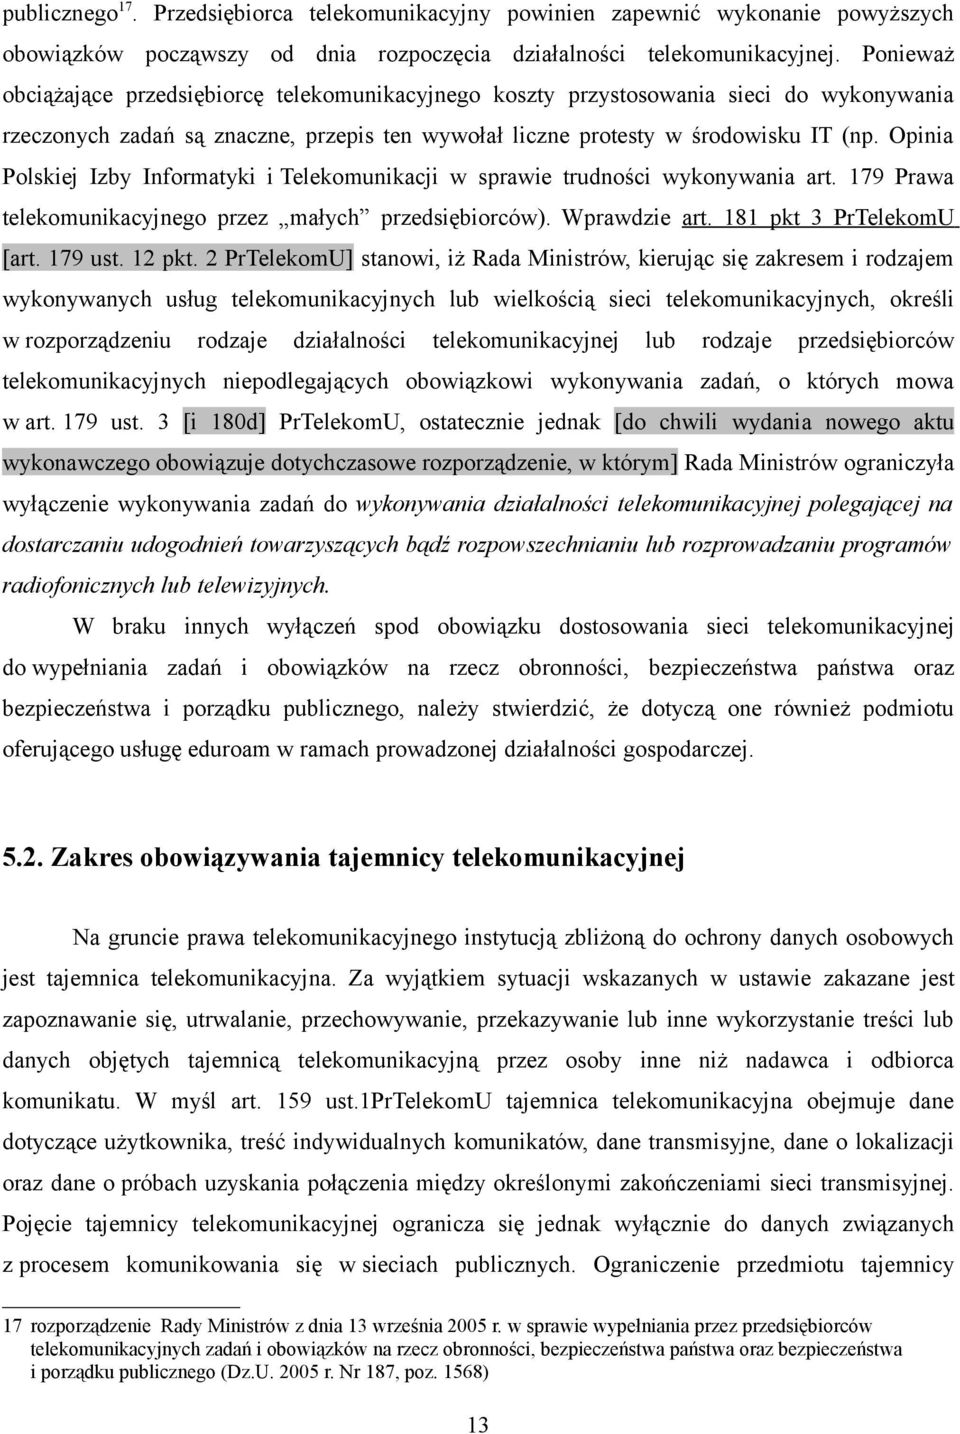 Opinia Polskiej Izby Informatyki i Telekomunikacji w sprawie trudności wykonywania art. 179 Prawa telekomunikacyjnego przez małych przedsiębiorców). Wprawdzie art. 181 pkt 3 PrTelekomU [art. 179 ust.